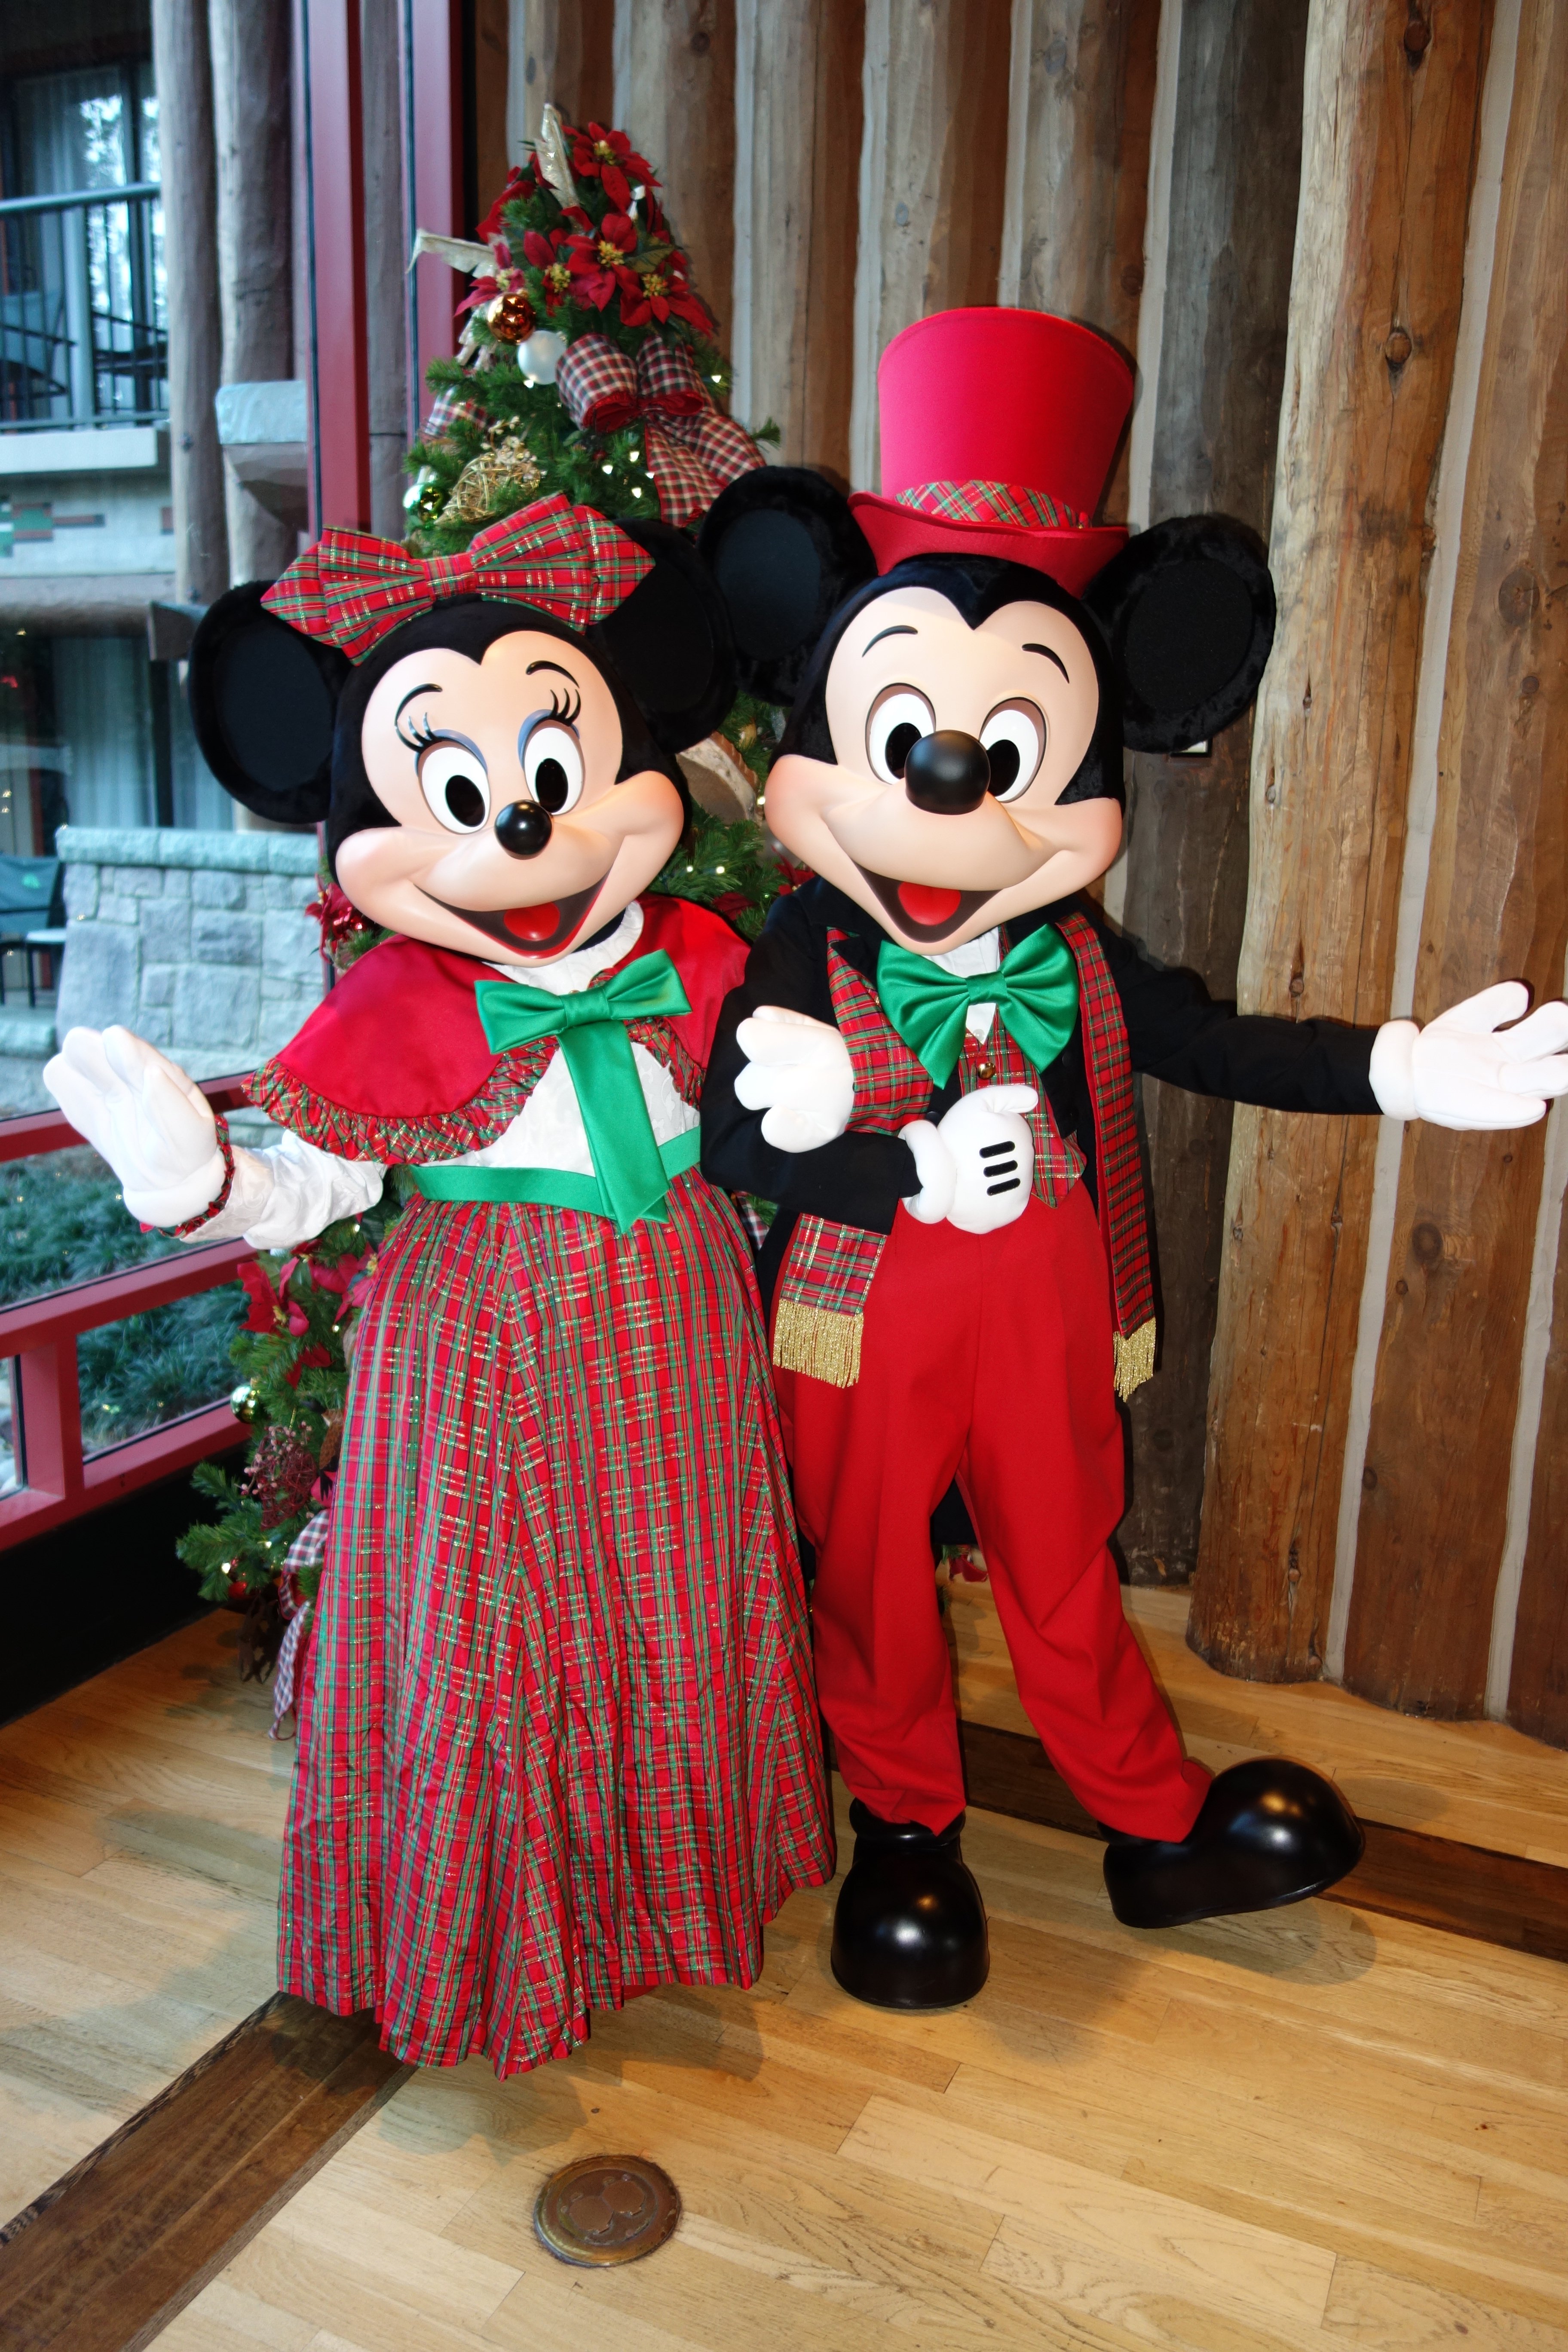 Mickey and Minnie Dec2012 xmas Wild Lodge (4)